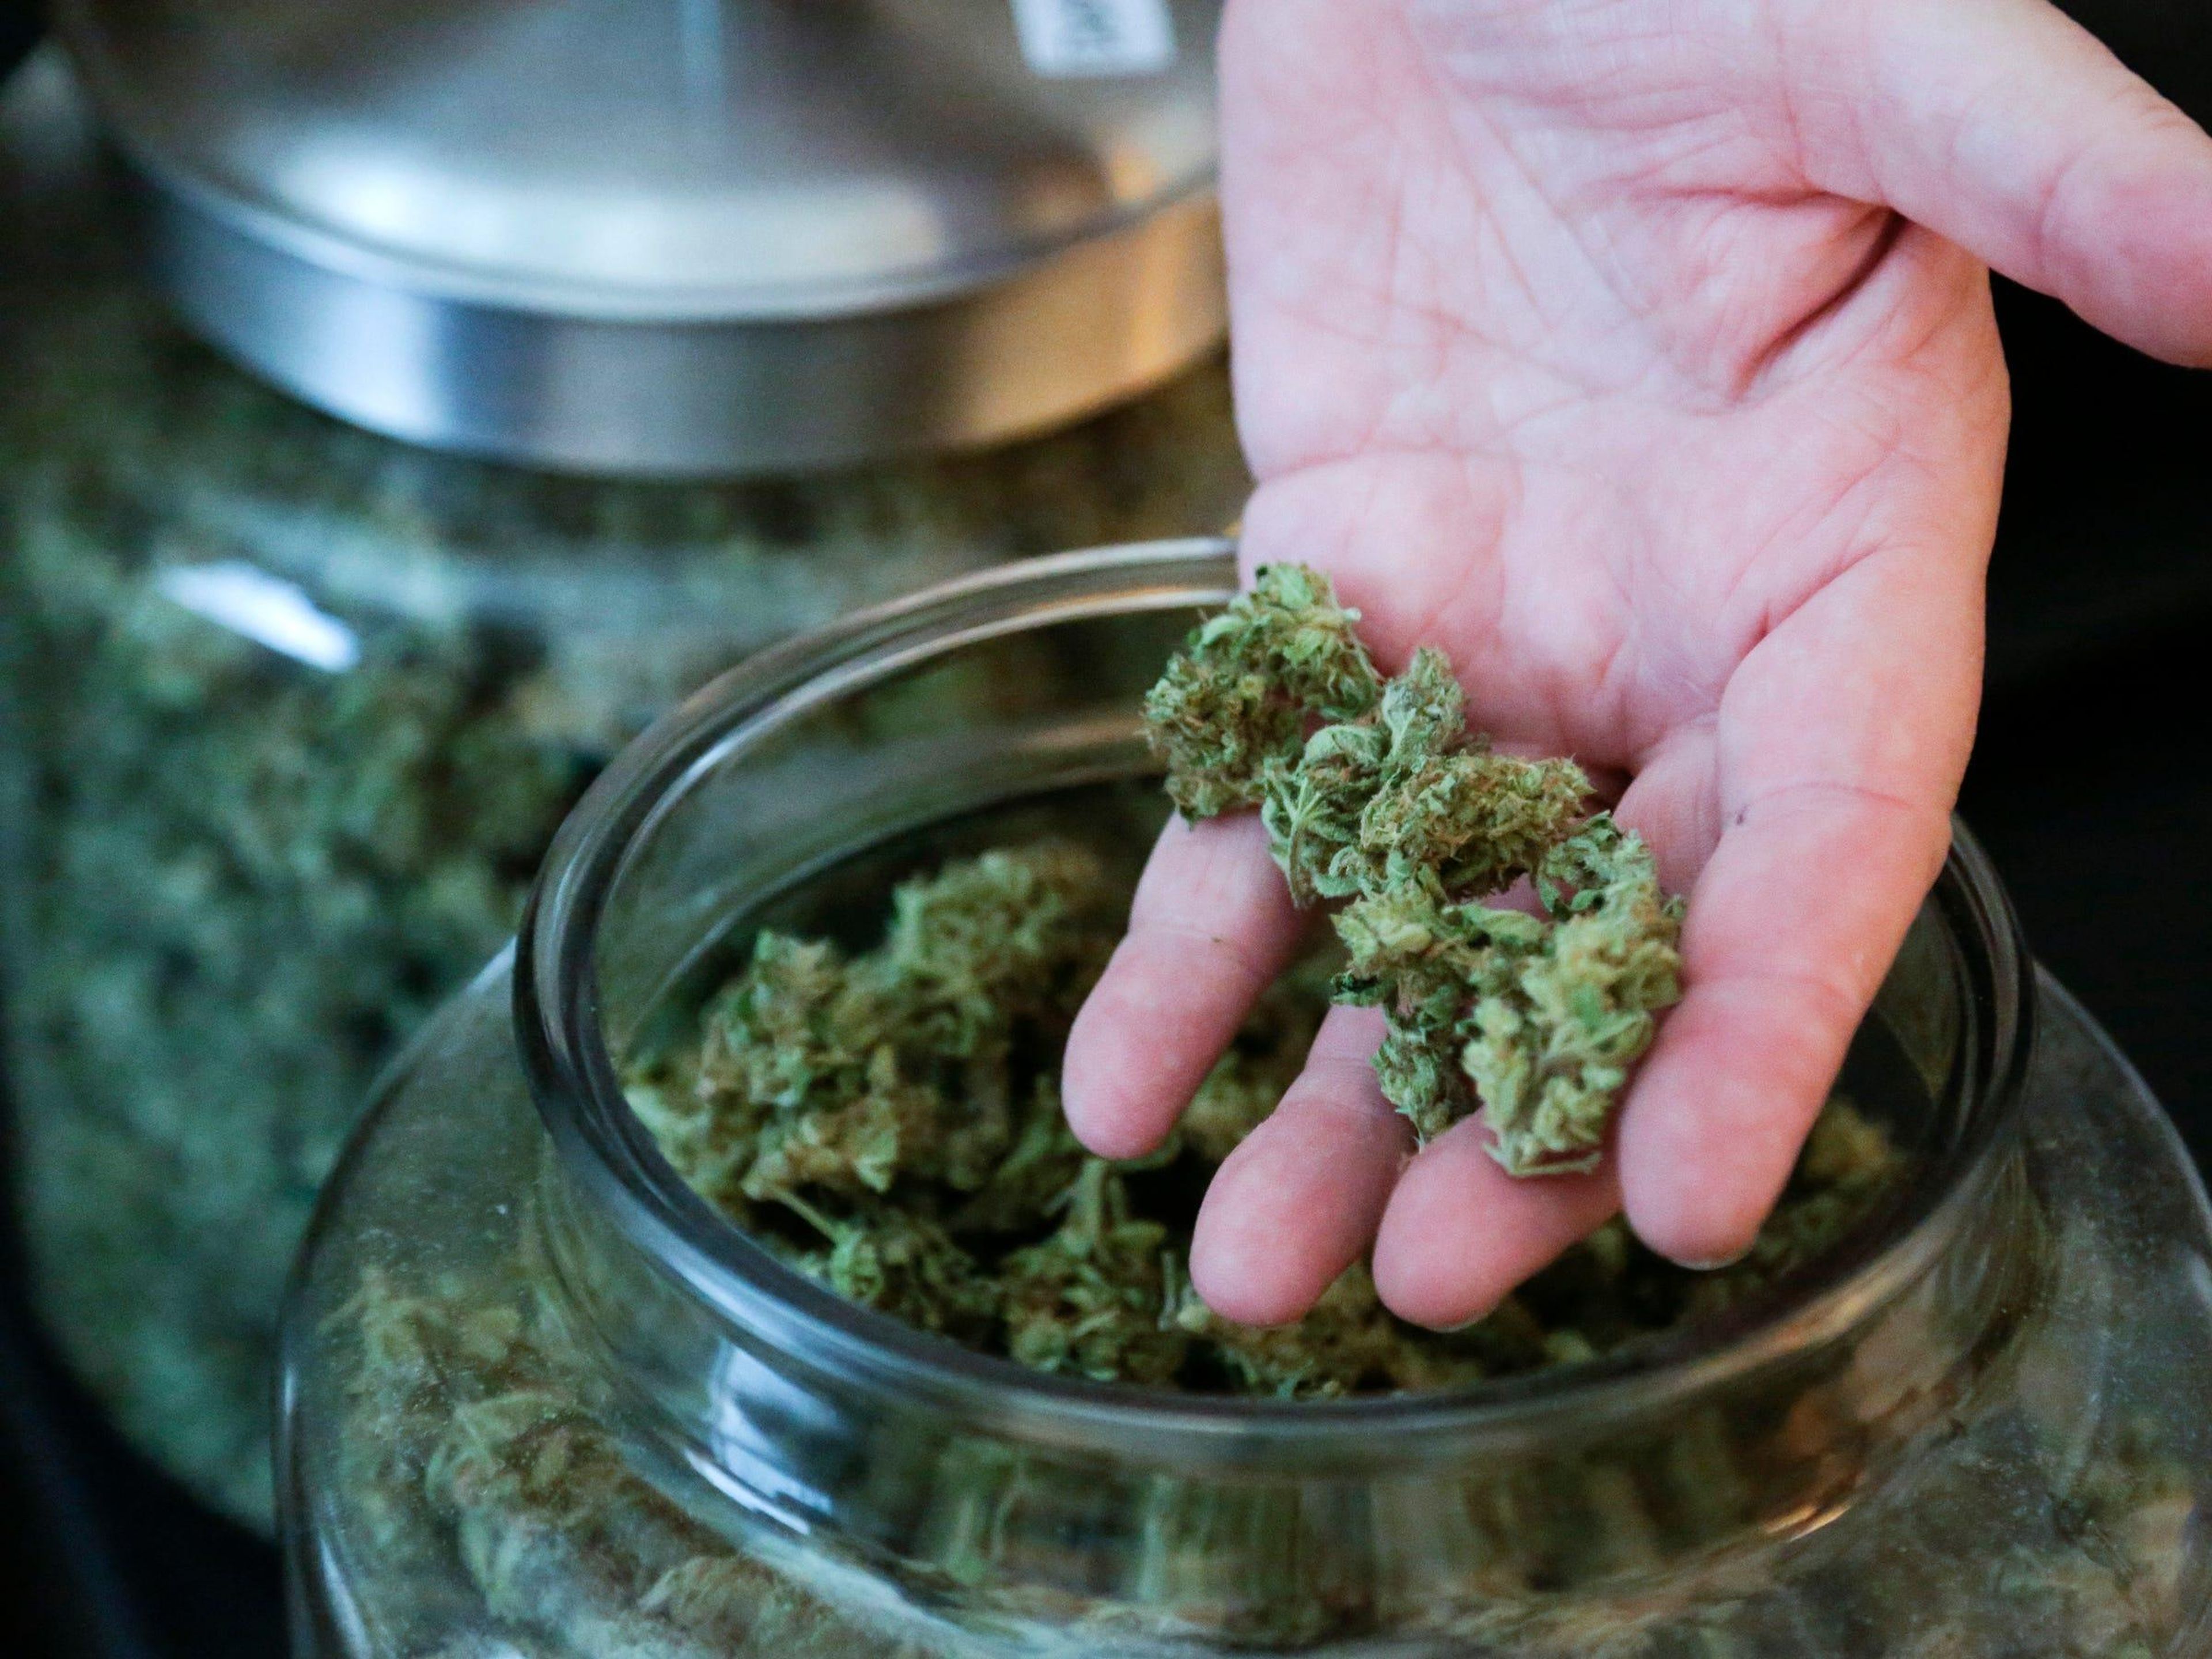 Bob Leeds, copropietario de Sea of ​​Green Farms, muestra parte de la marihuana que produce durante un recorrido por las instalaciones de su empresa en Seattle, Washington, el 30 de junio de 2014.